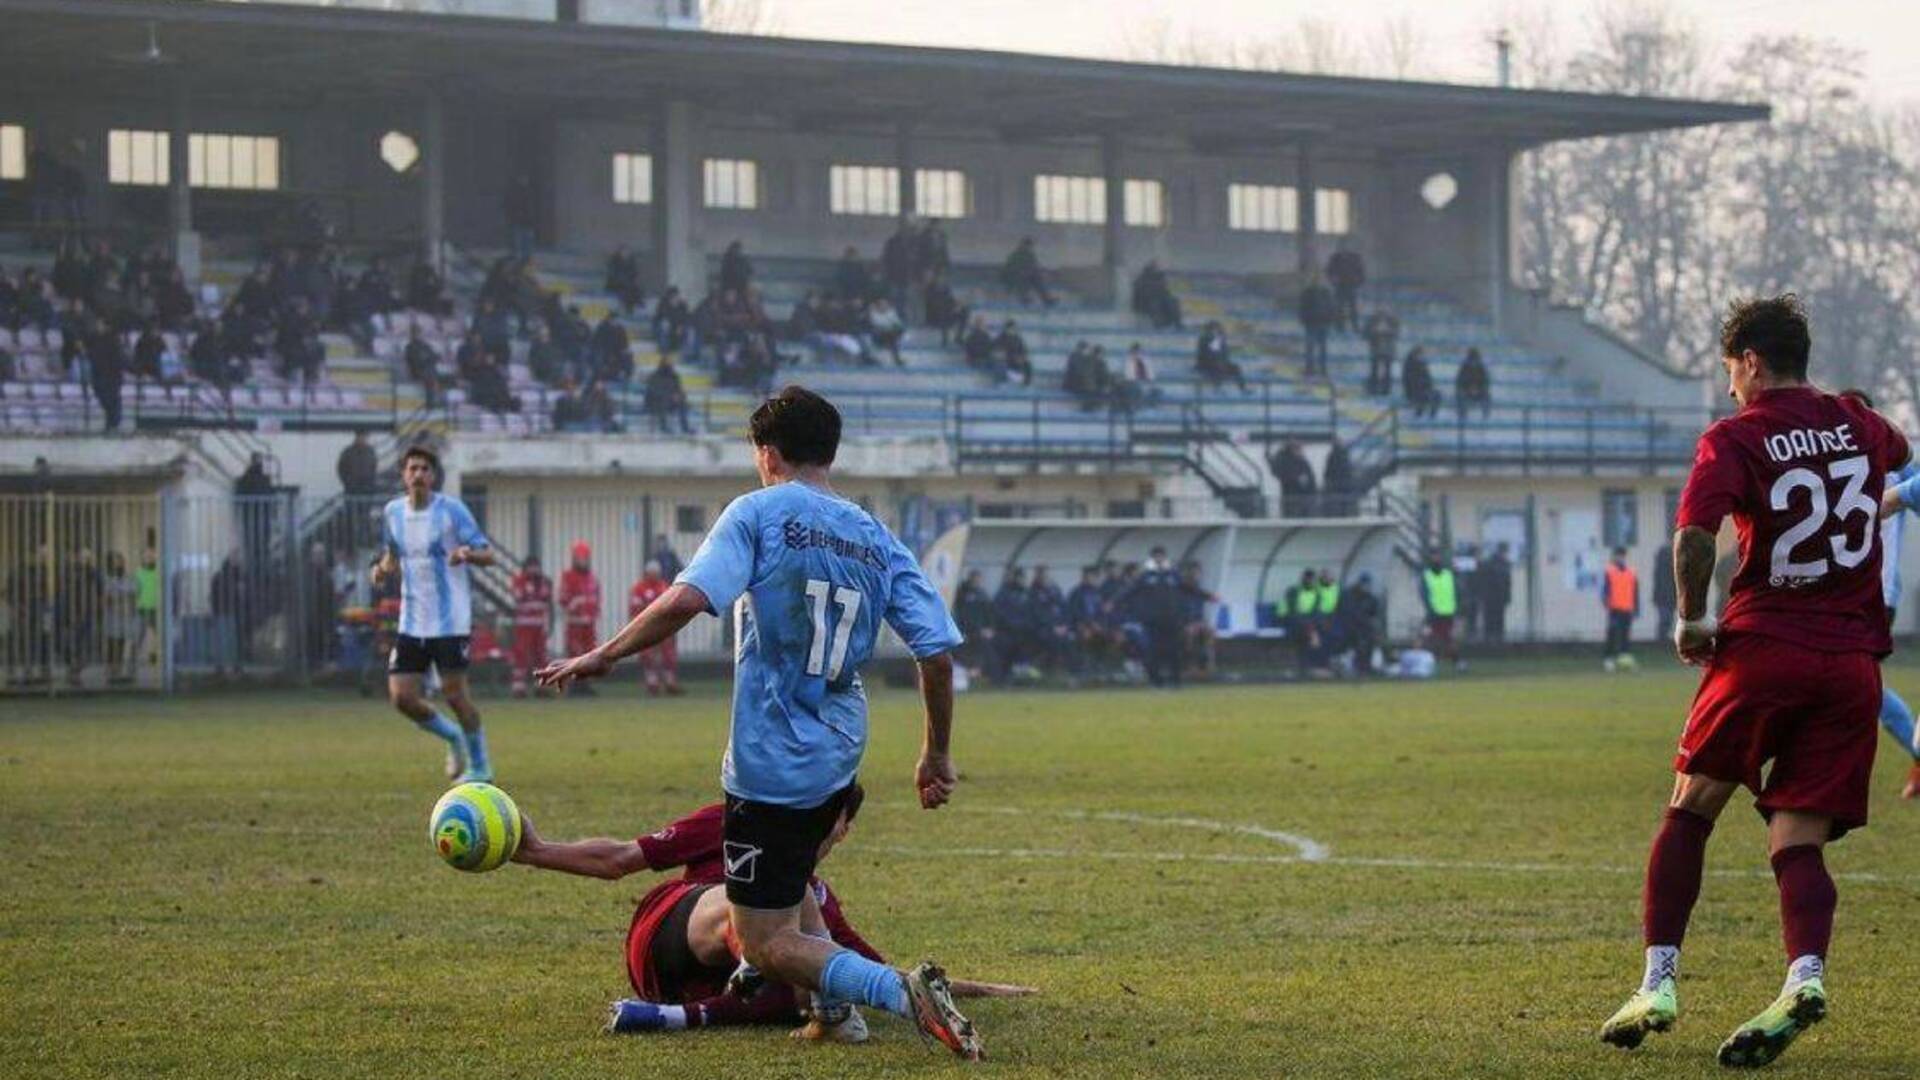 Calcio Pavia-Fbc Saronno: ecco l’immagine del rigore non dato ai biancocelesti